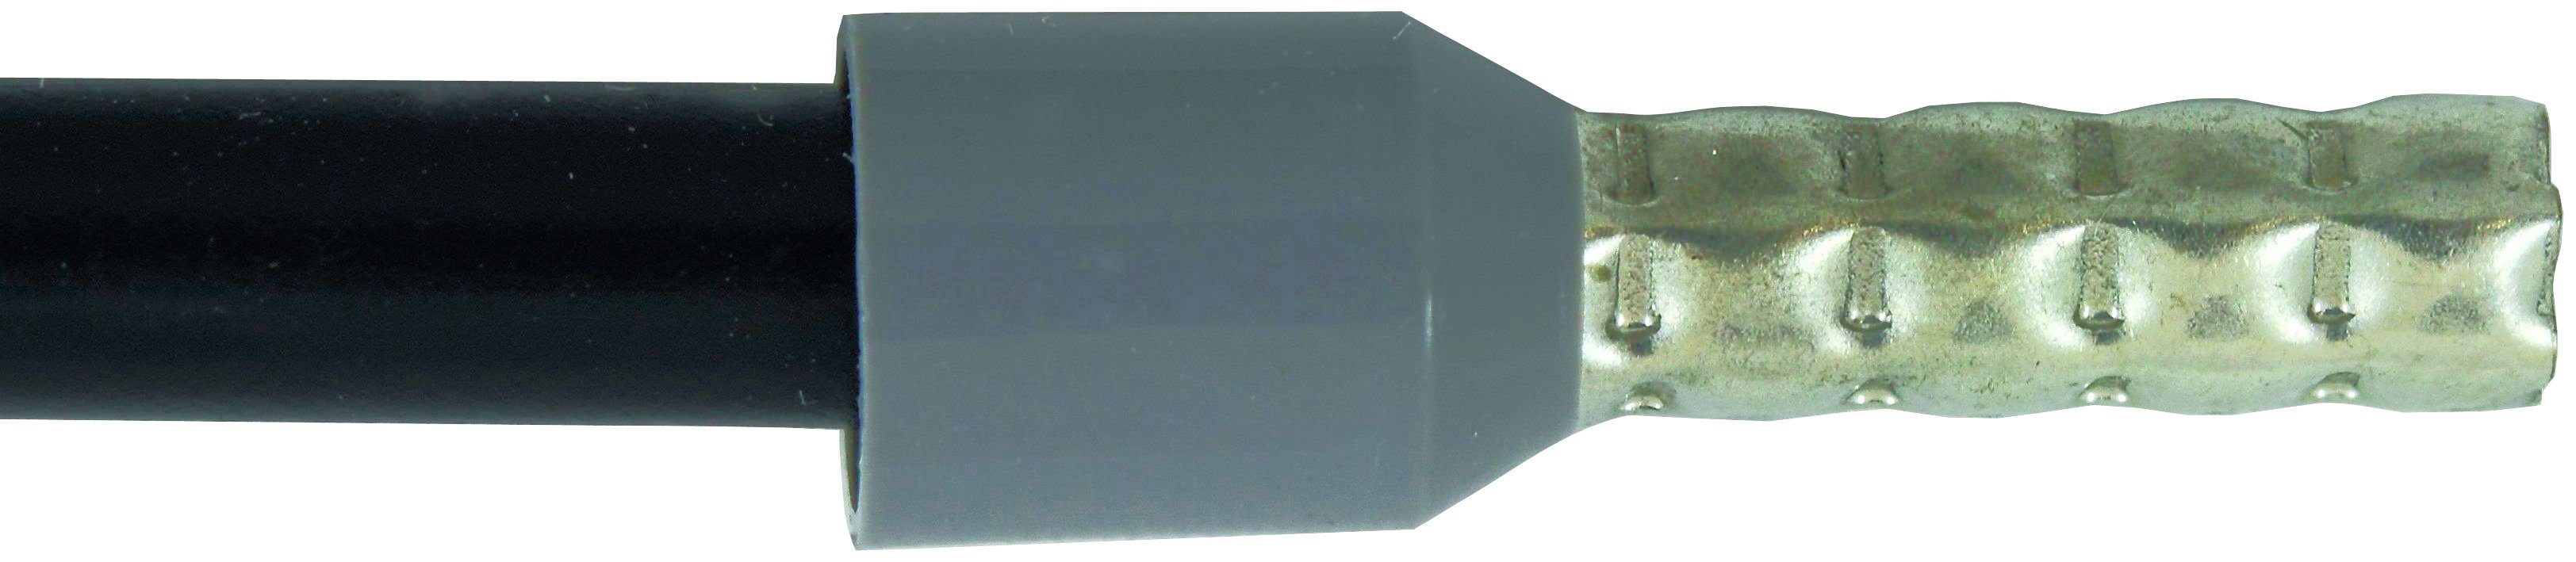 Wiha Crimpzange Crimpwerkzeug für Aderendhülsen Sechskant-Pressung automatisch (41246), 210 mm